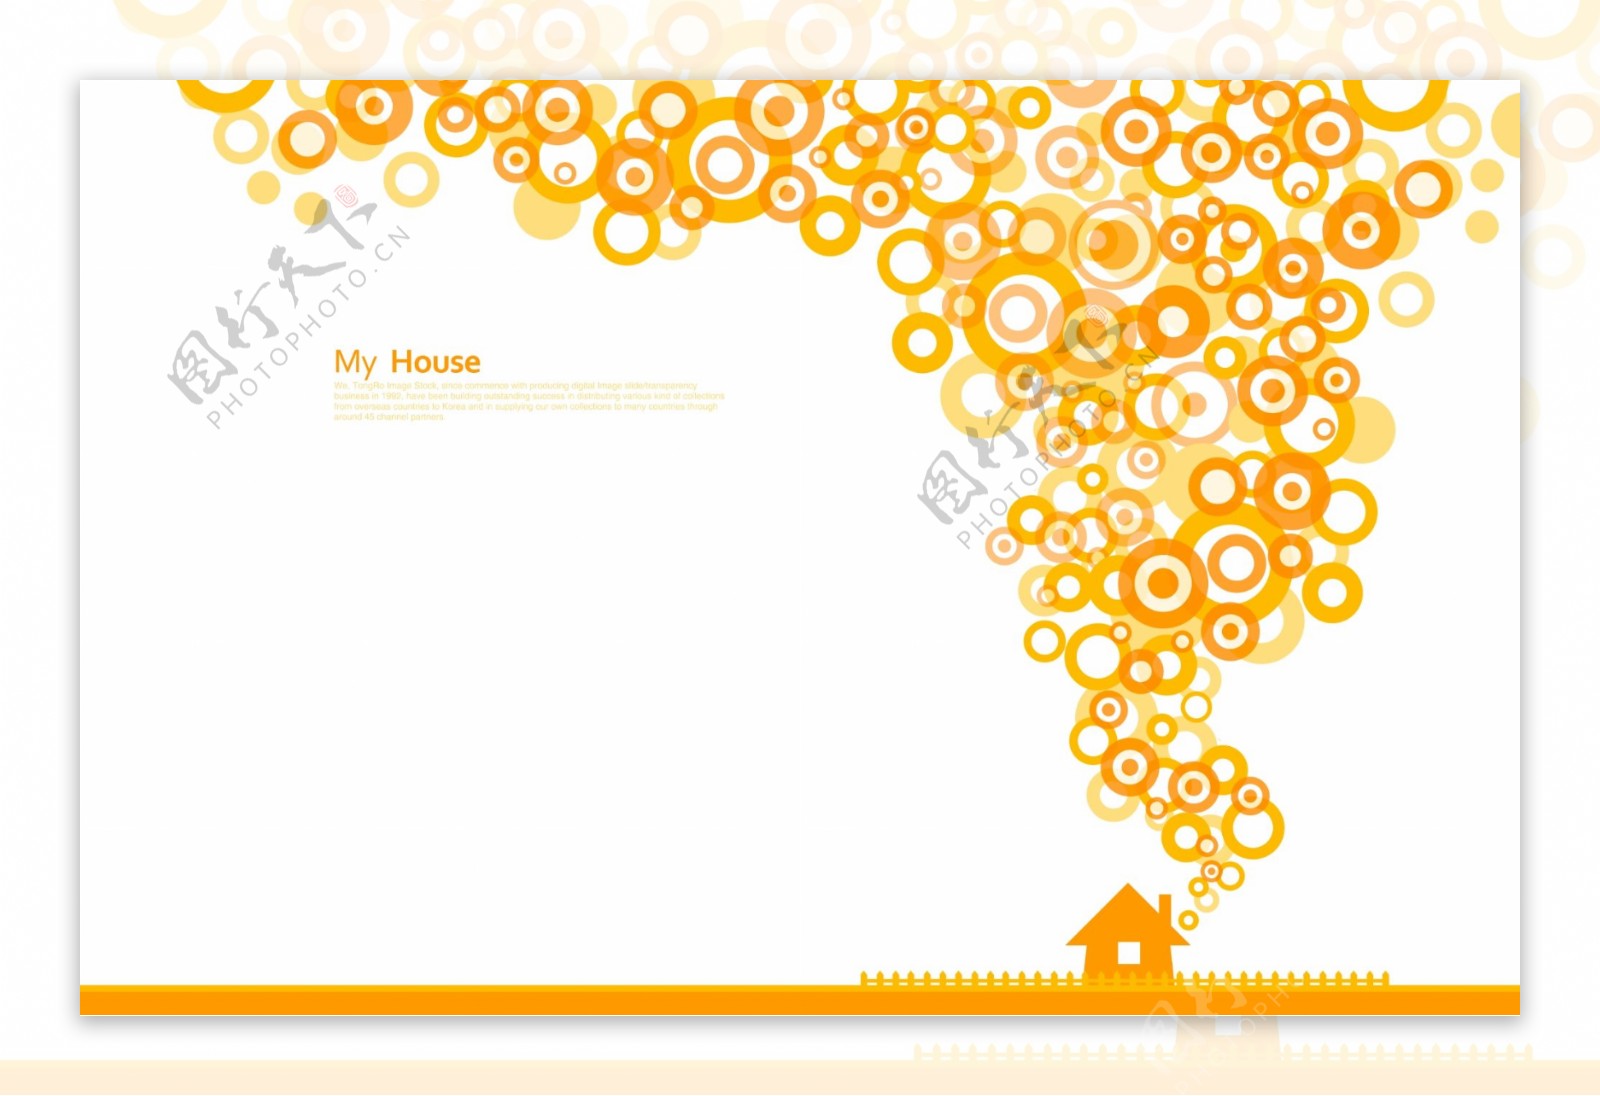 橙色房屋和同心圆形